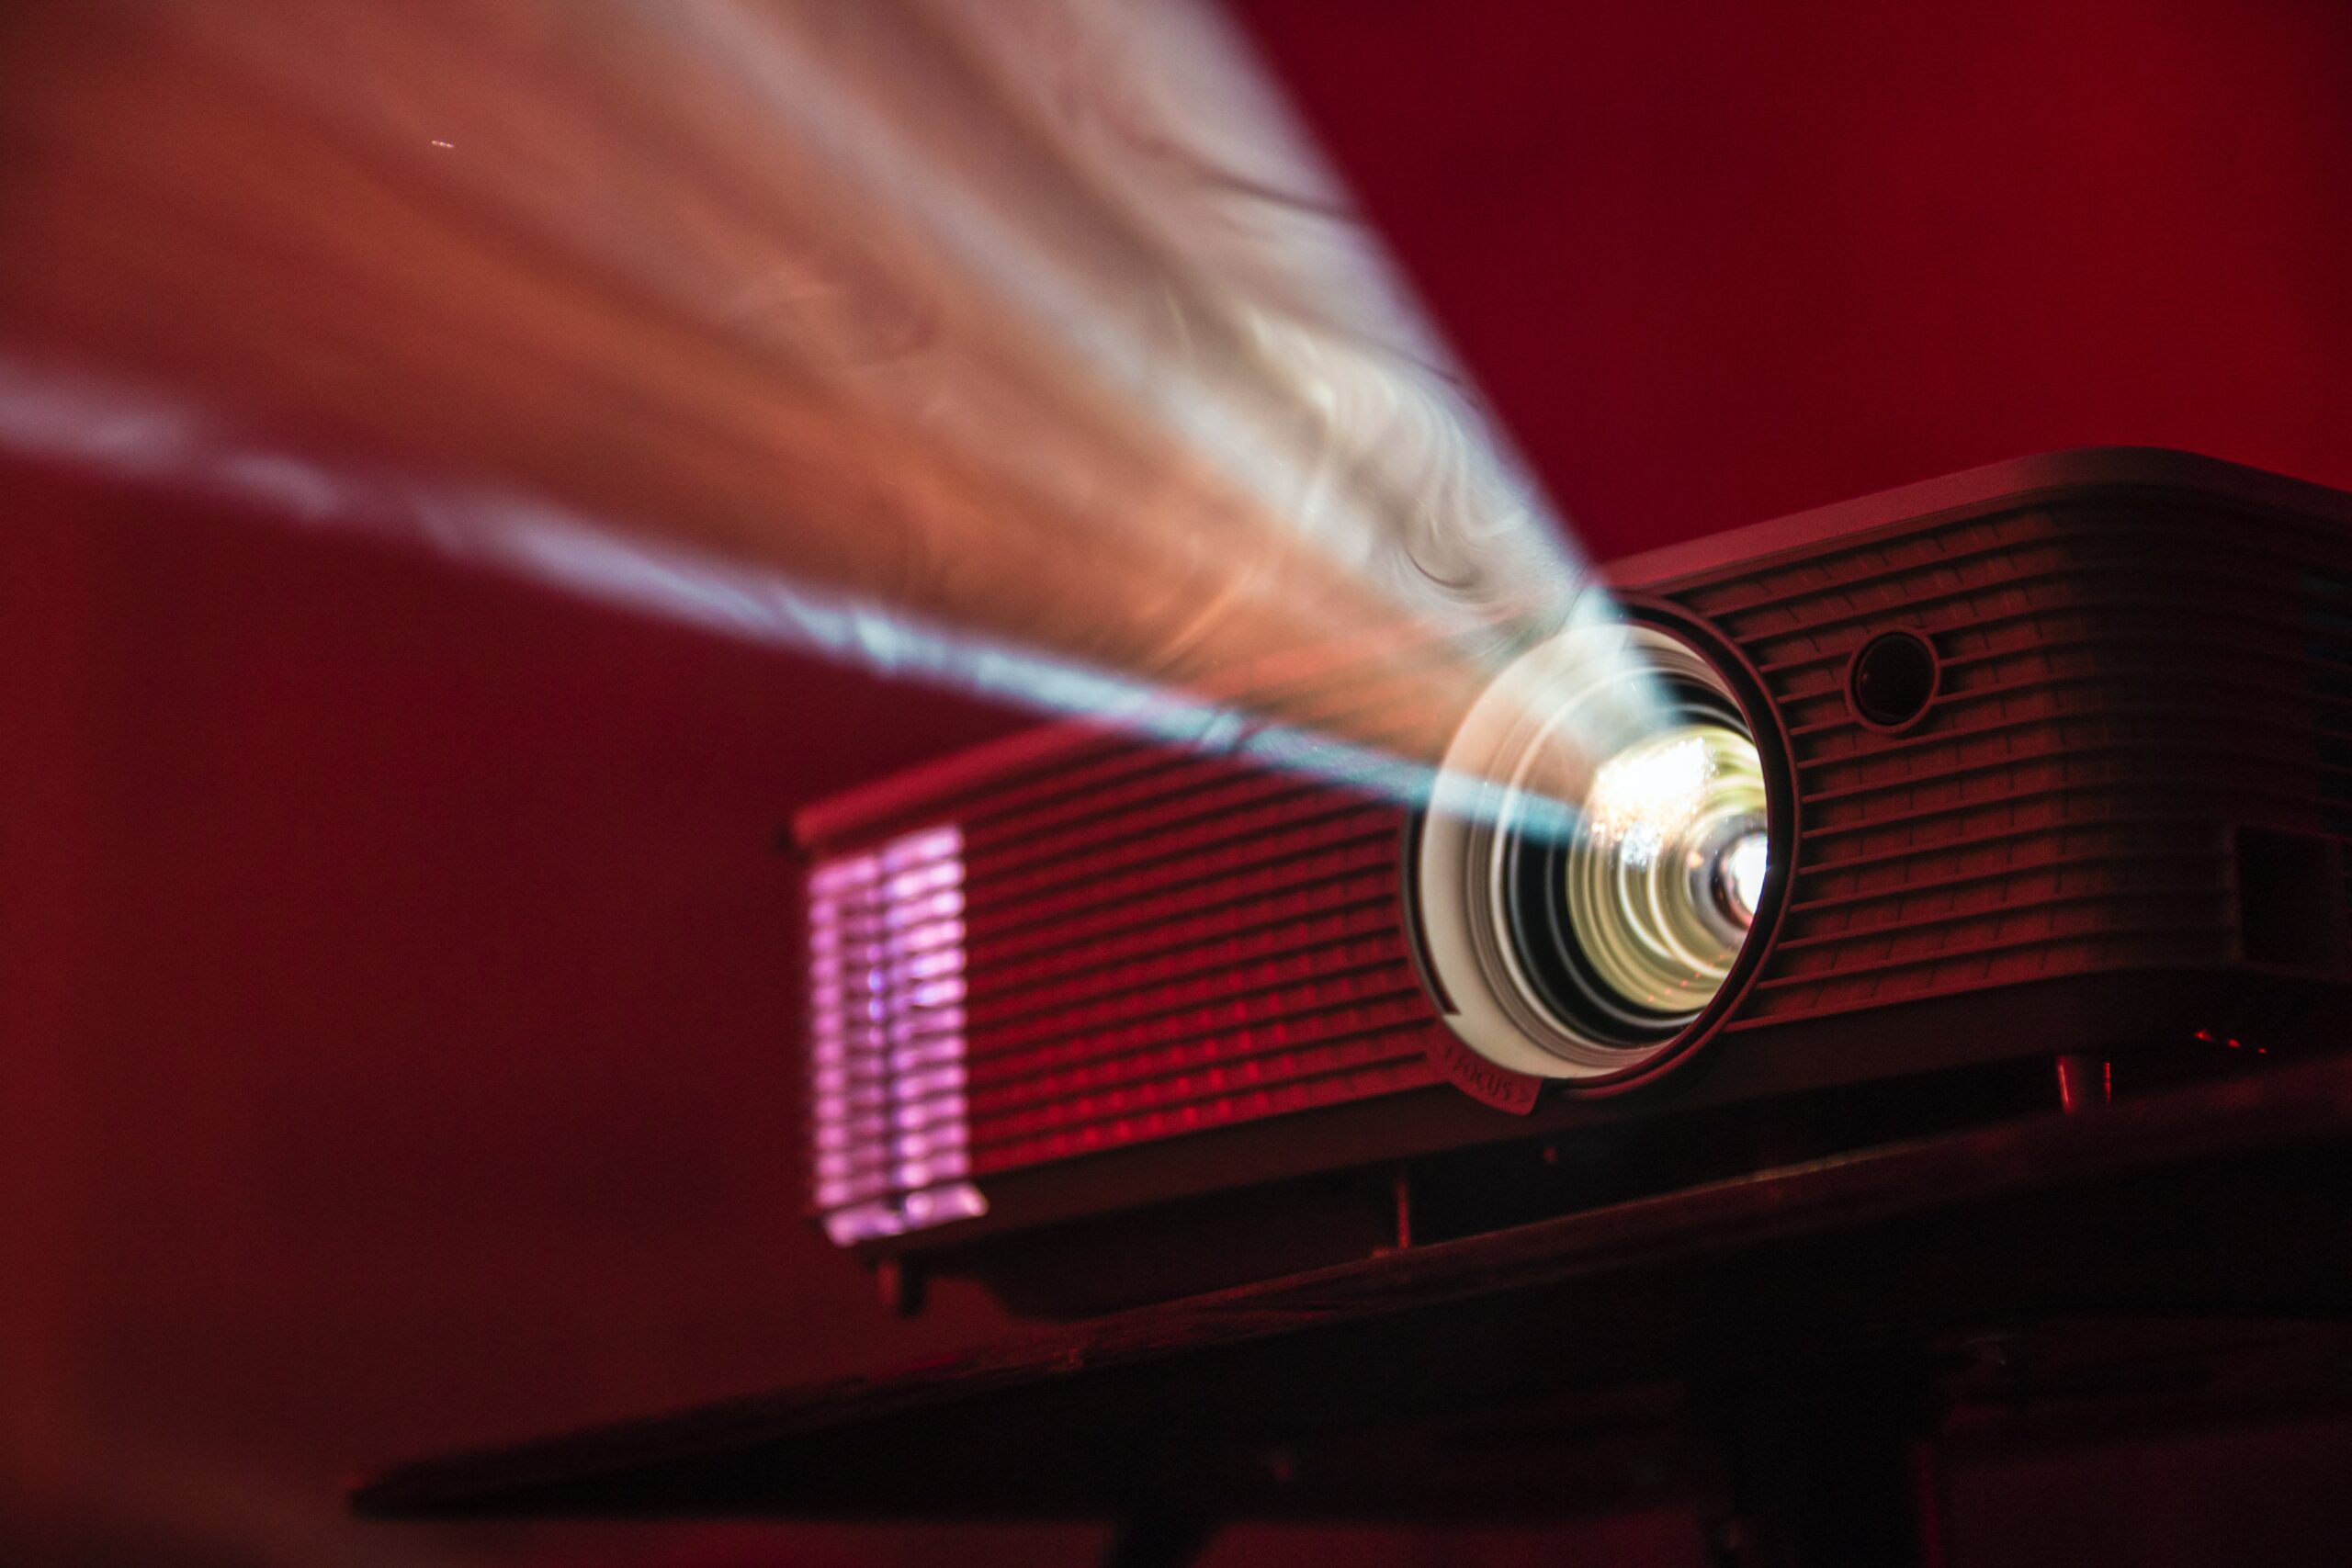 Projektor filmowy podczas emitowania materiału / Movie projector during a broadcast